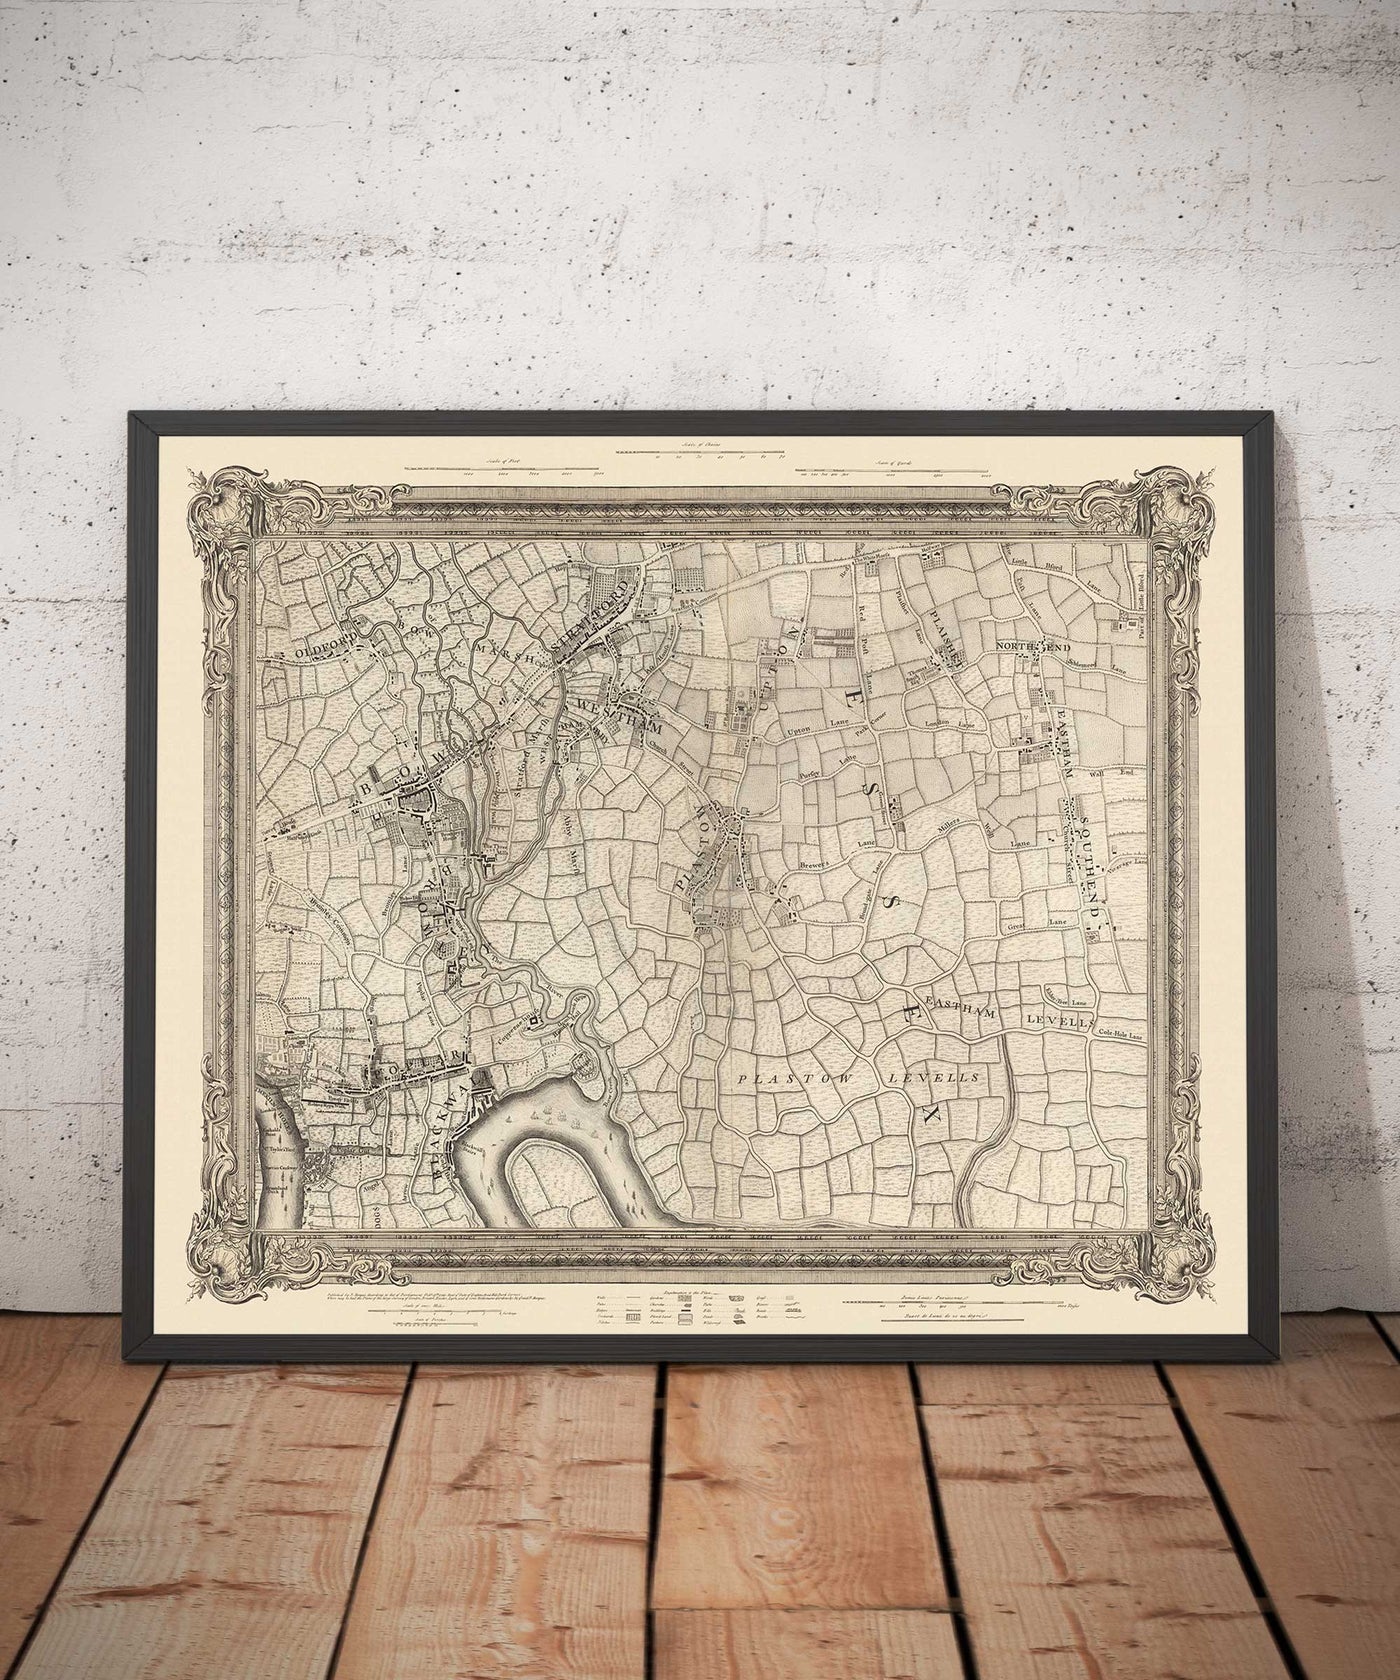 Ancienne carte de l'est de Londres en 1746 par John Rocque - Stratford, Eastham, Upton Park, Canary Wharf, Plaistow, E3, E6, E13, E14, E15, E16